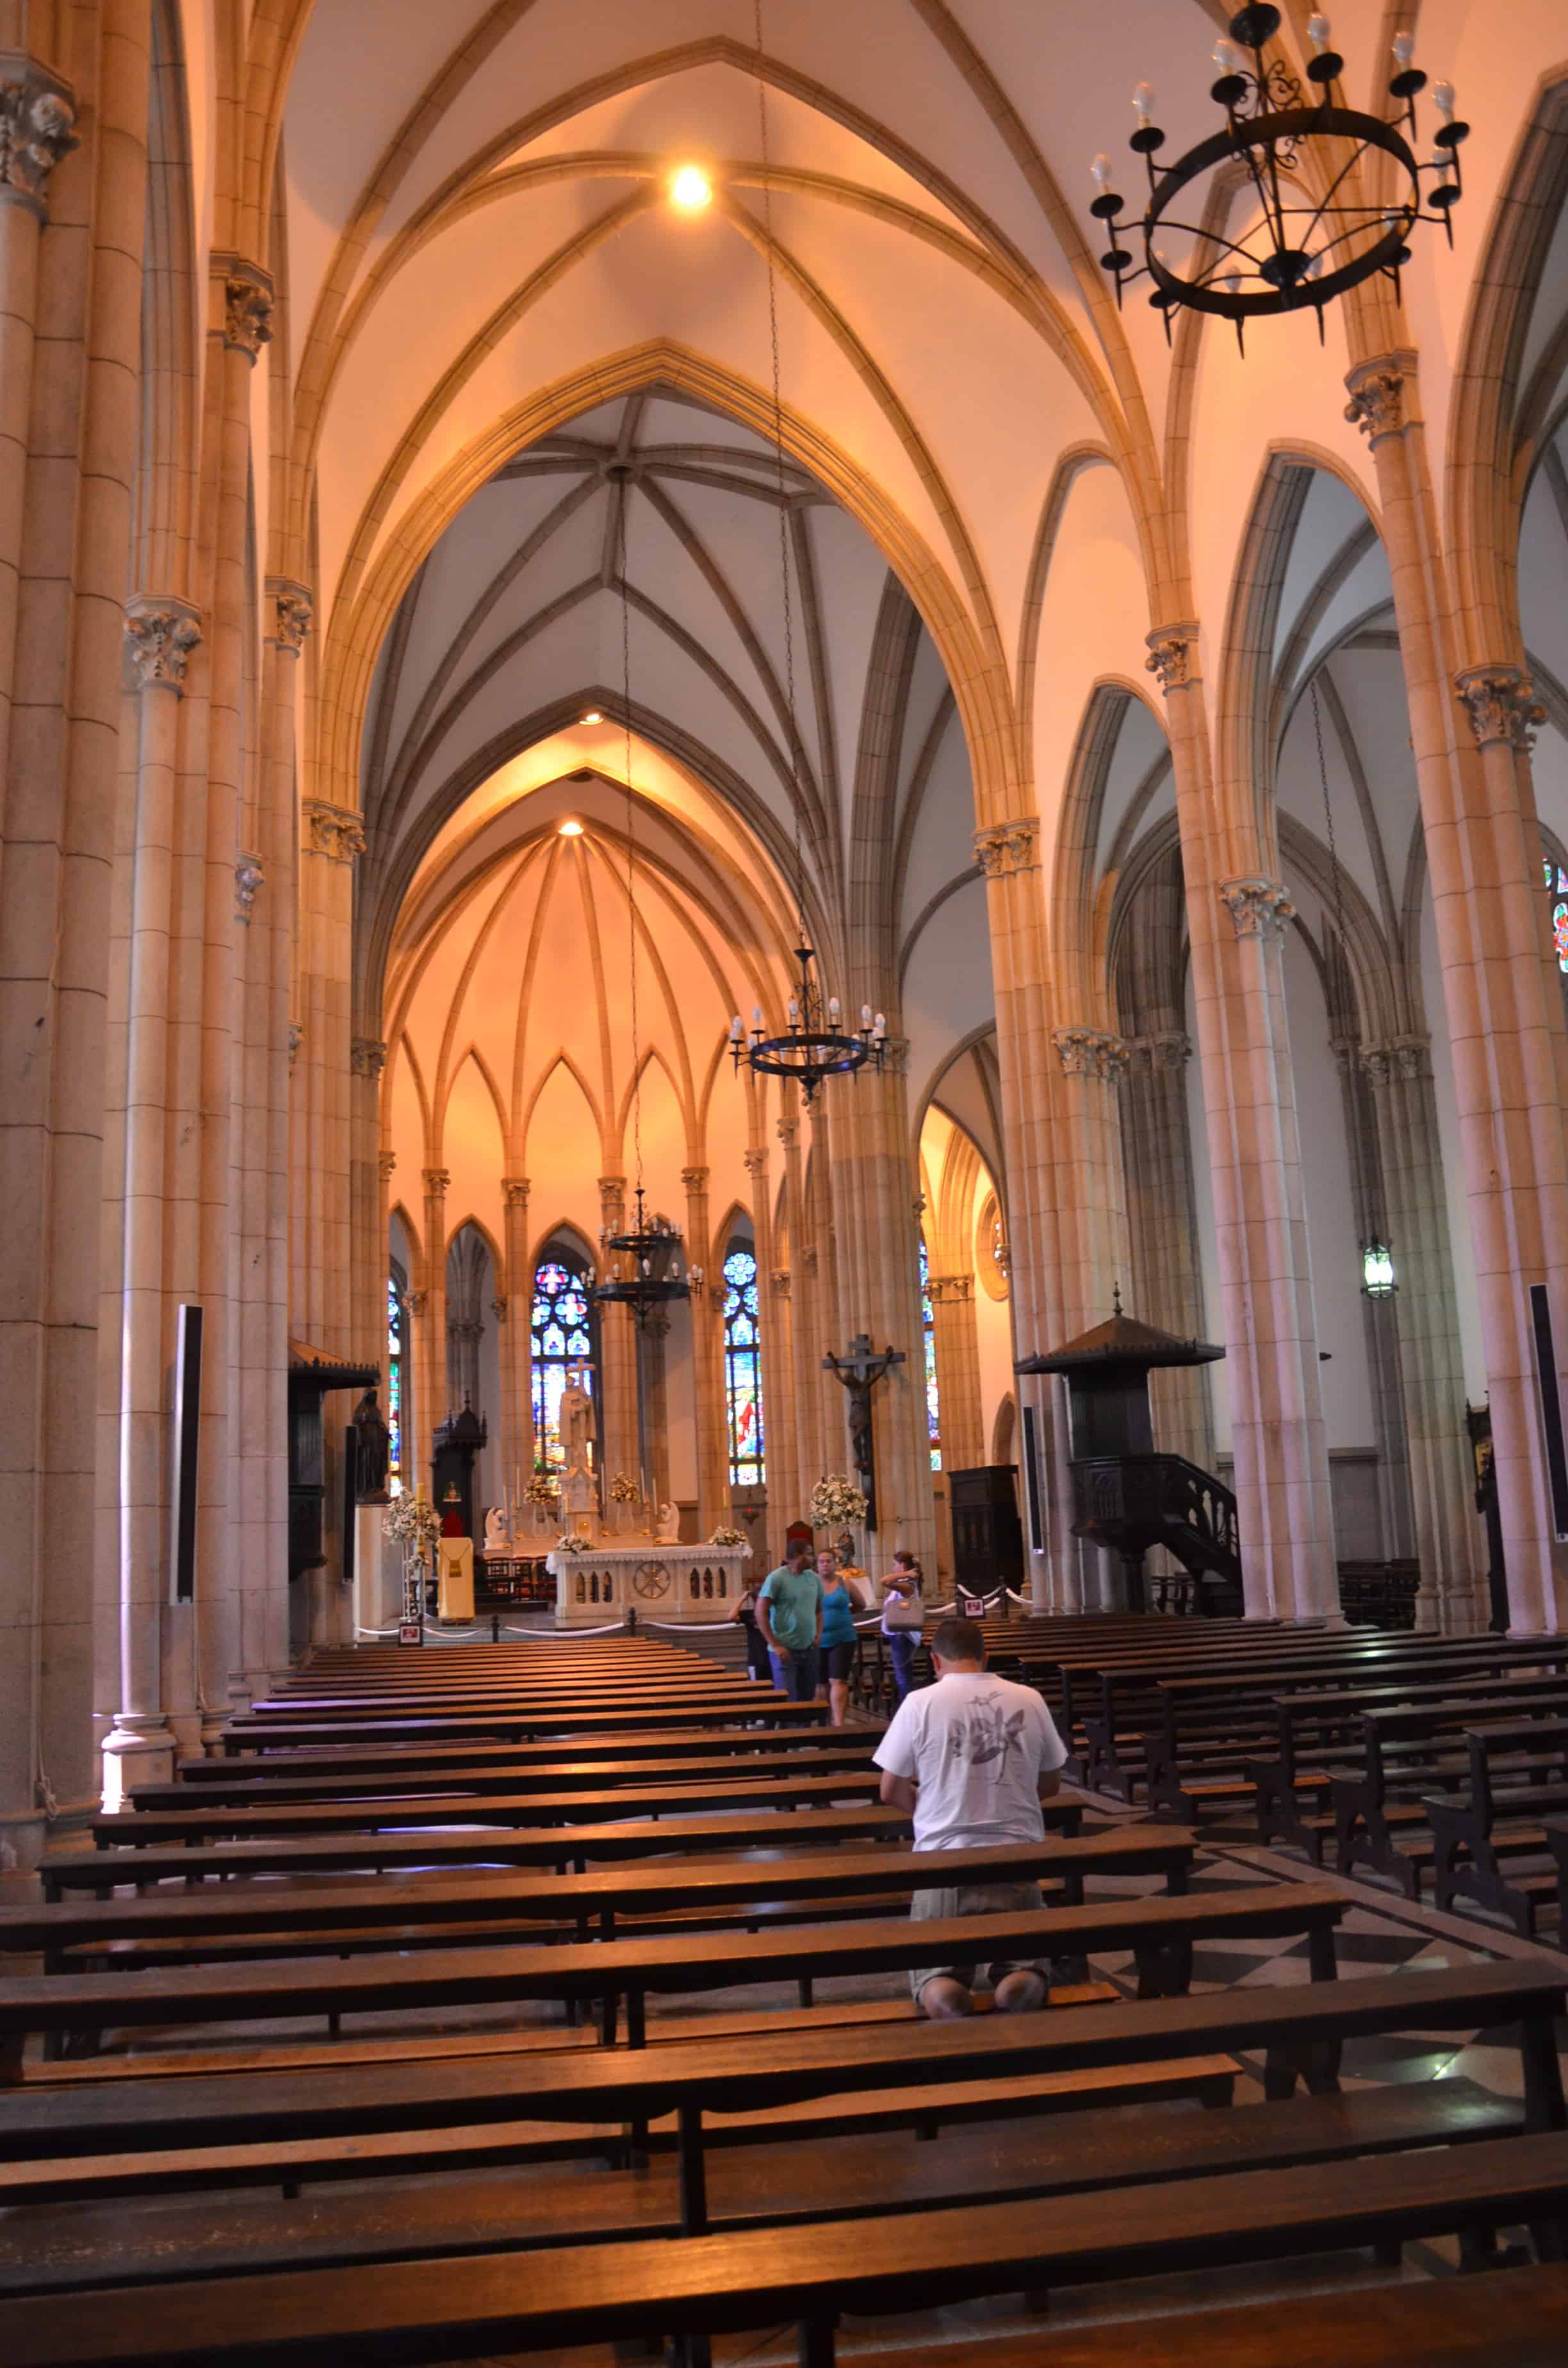 Catedral de São Pedro de Alcântara in Petrópolis, Brazil